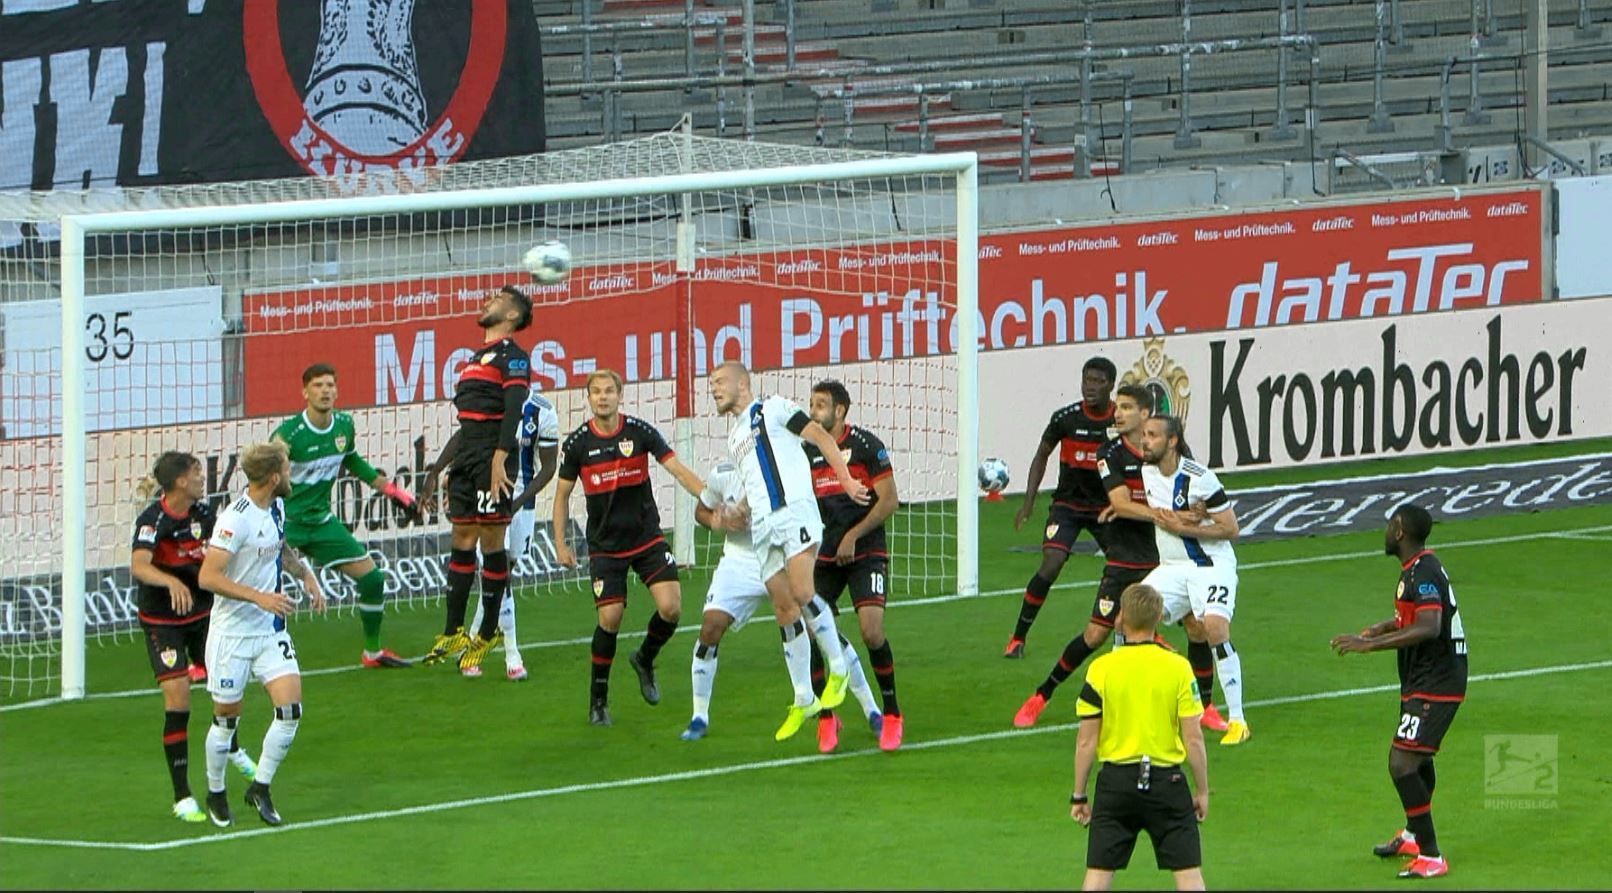 Stuttgart - Hamburger 0-1, ACUM, la Digi Sport 1. Oaspeţii deschid scorul în derby-ul promovării. În tur a fost 6-2